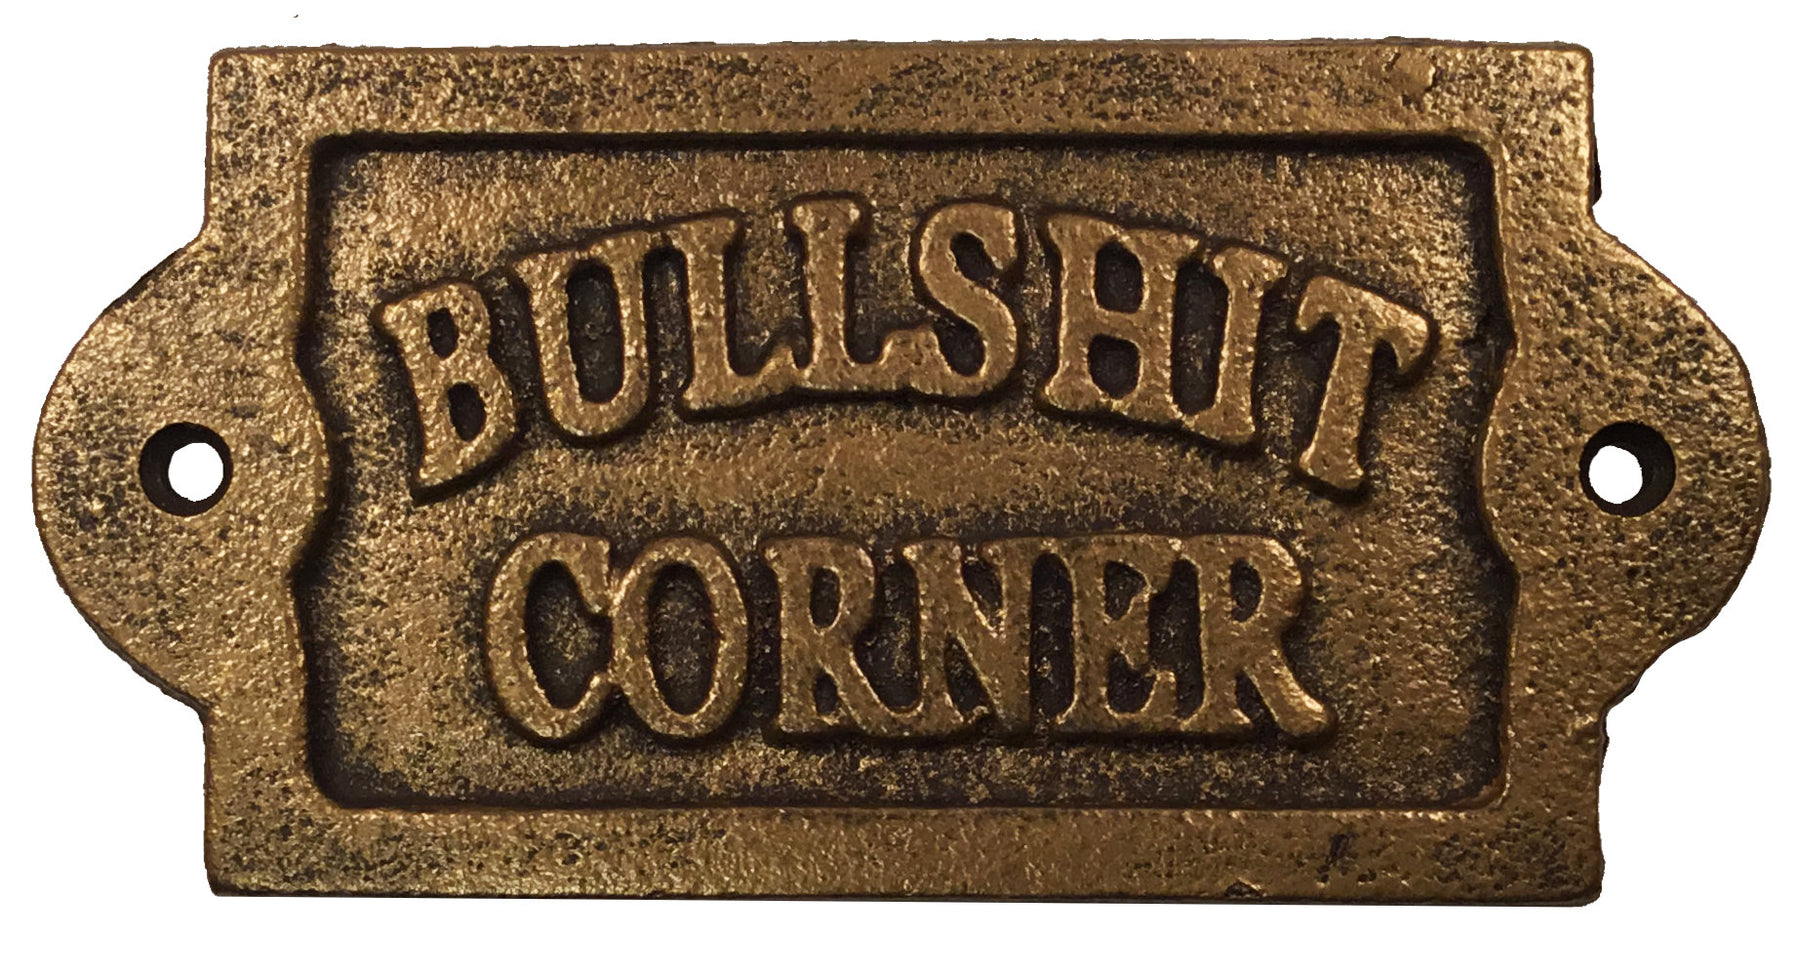 Bullshit Corner